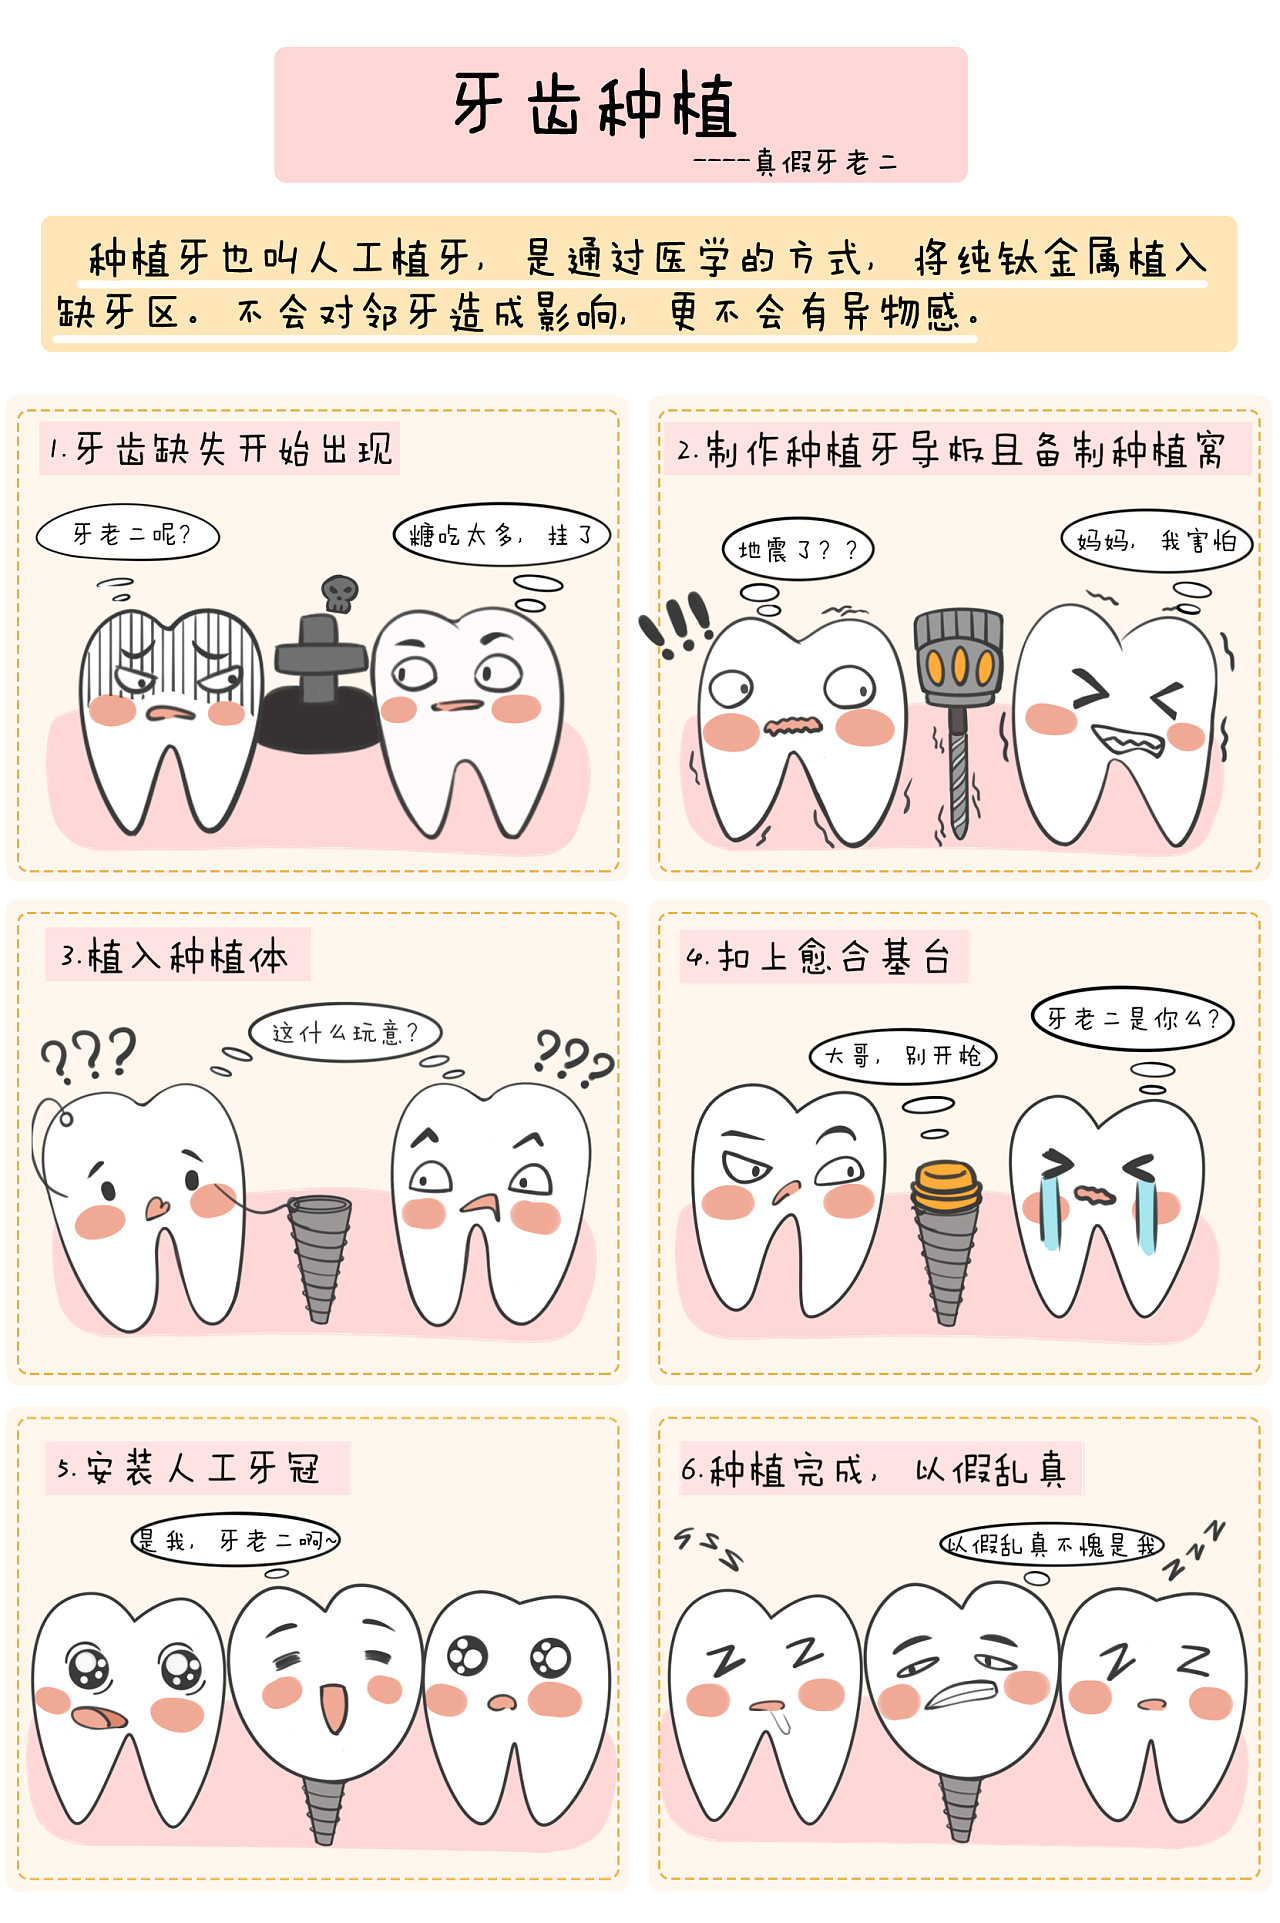 补牙的流程及步骤图片